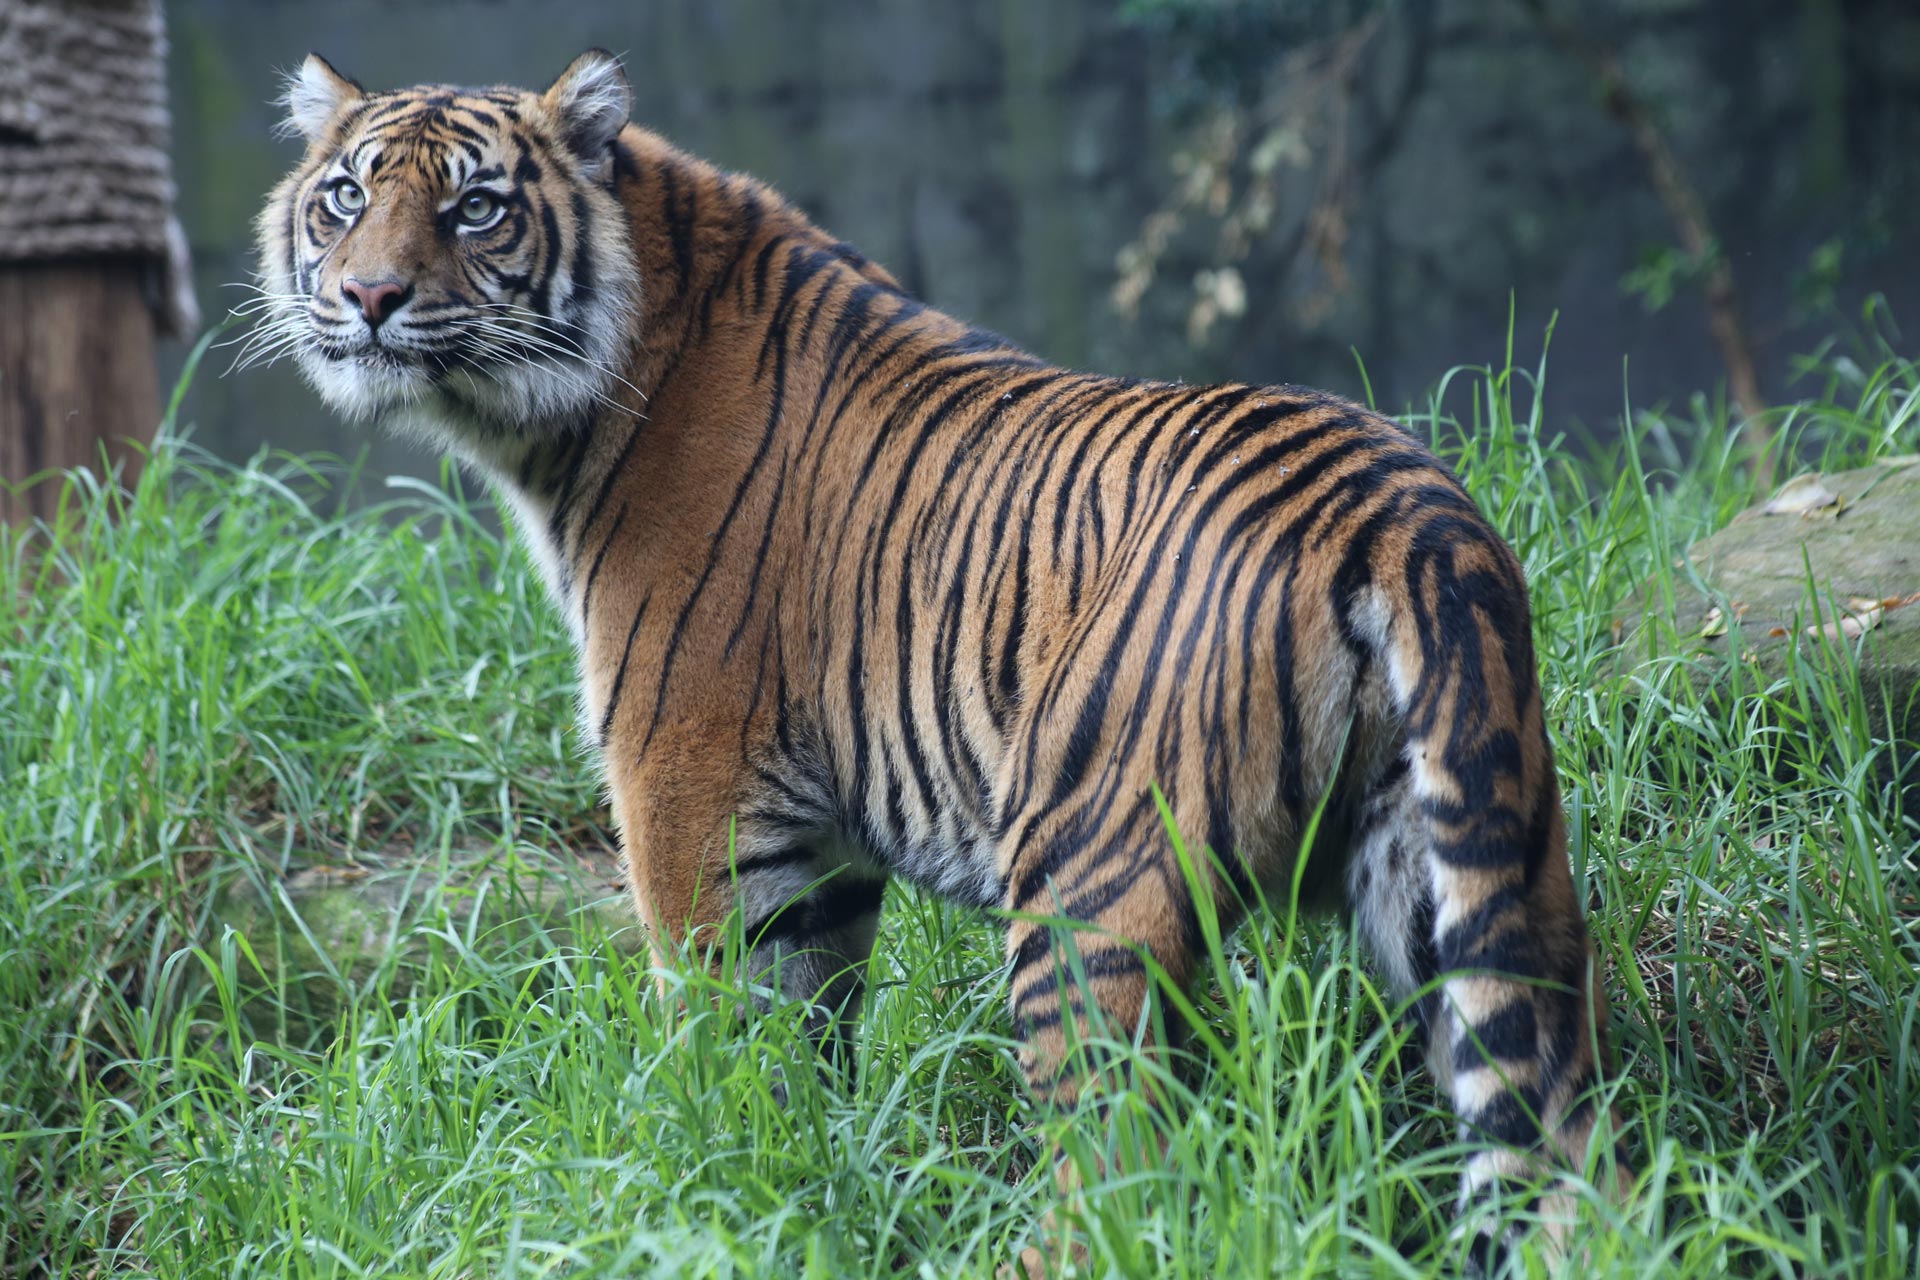 Suzanne Vlamis Sumatra Tigers- 230 - Suzanne Vlamis